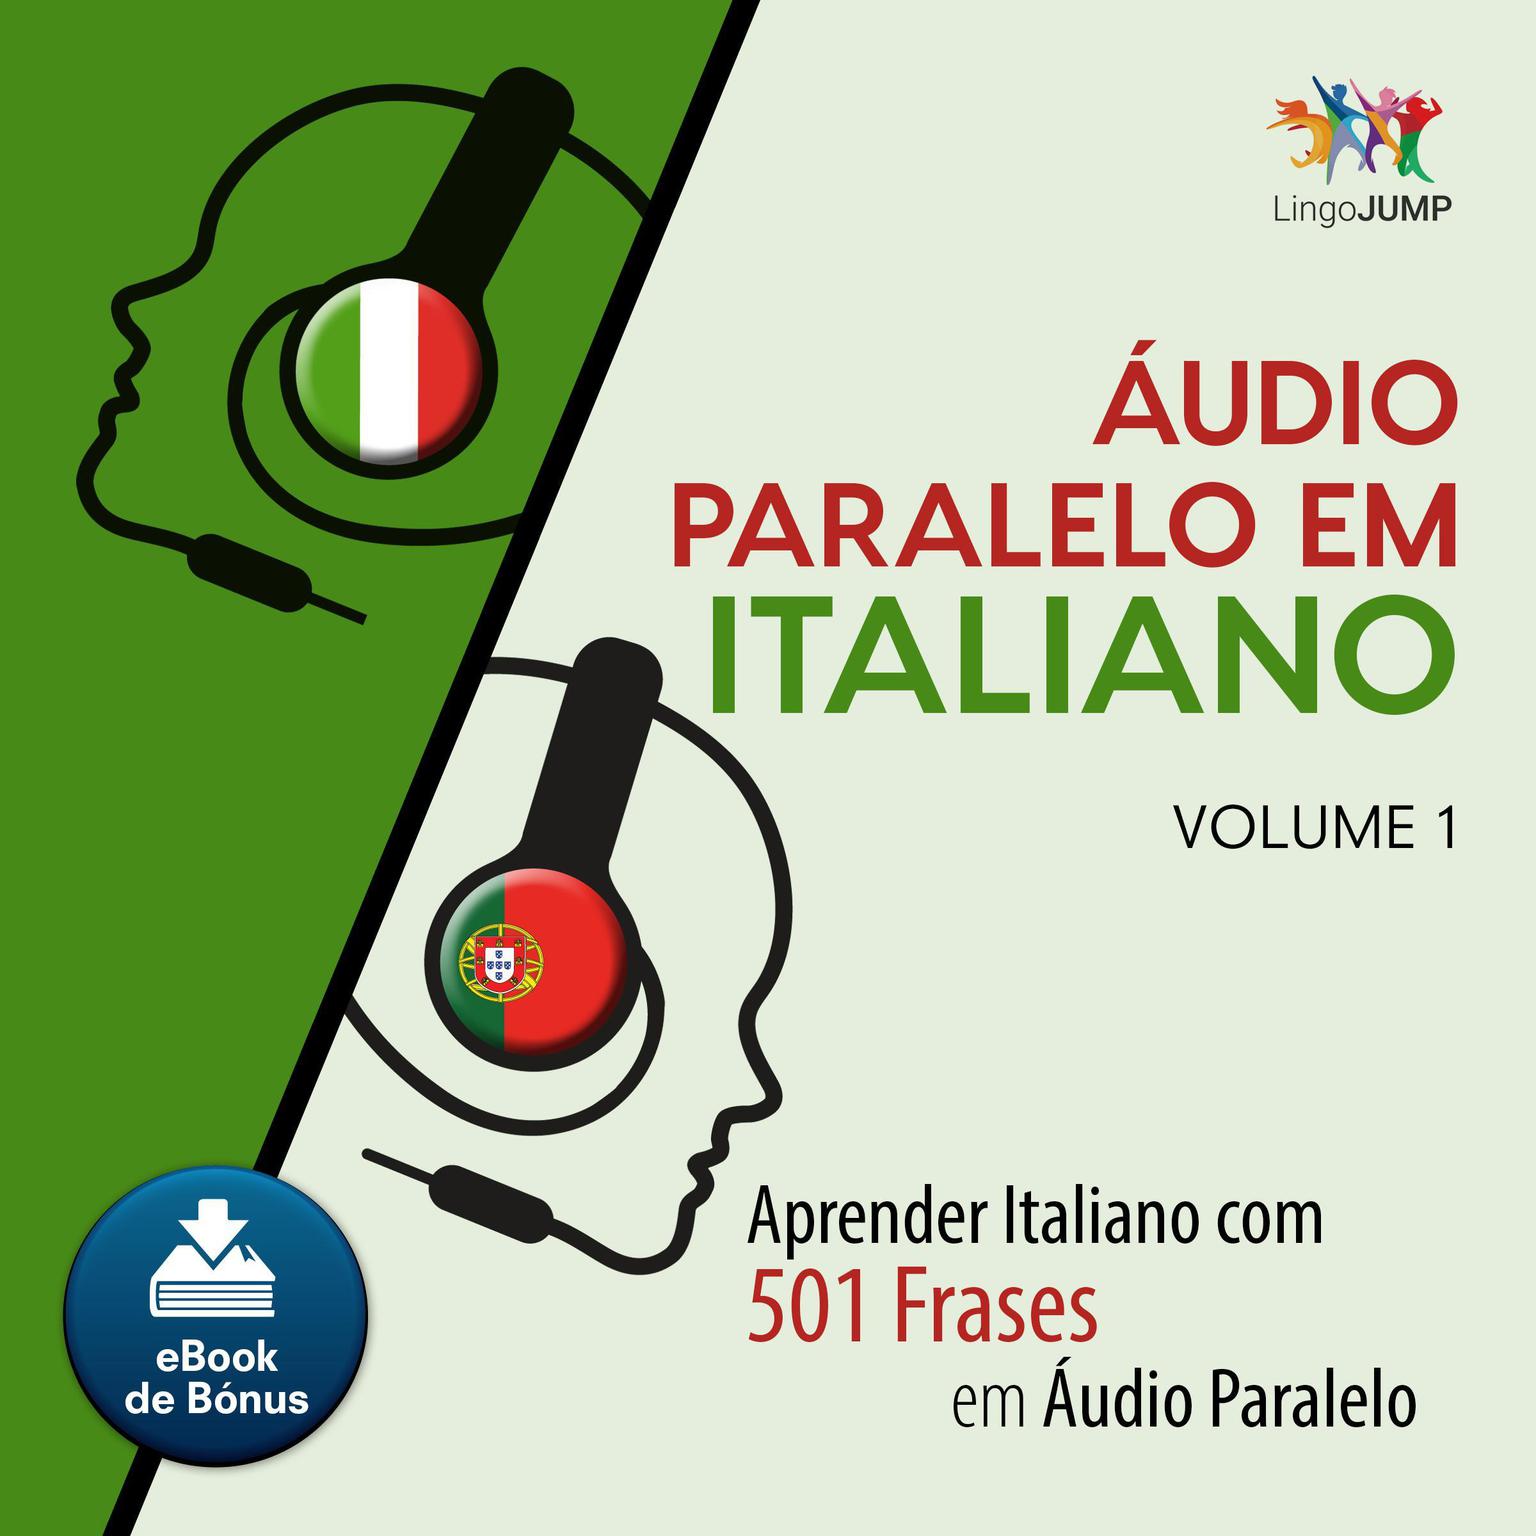 Audio Paralelo em Italiano - Aprender Italiano com 501 Frases em udio Paralelo - Volume 1 Audiobook, by Lingo Jump